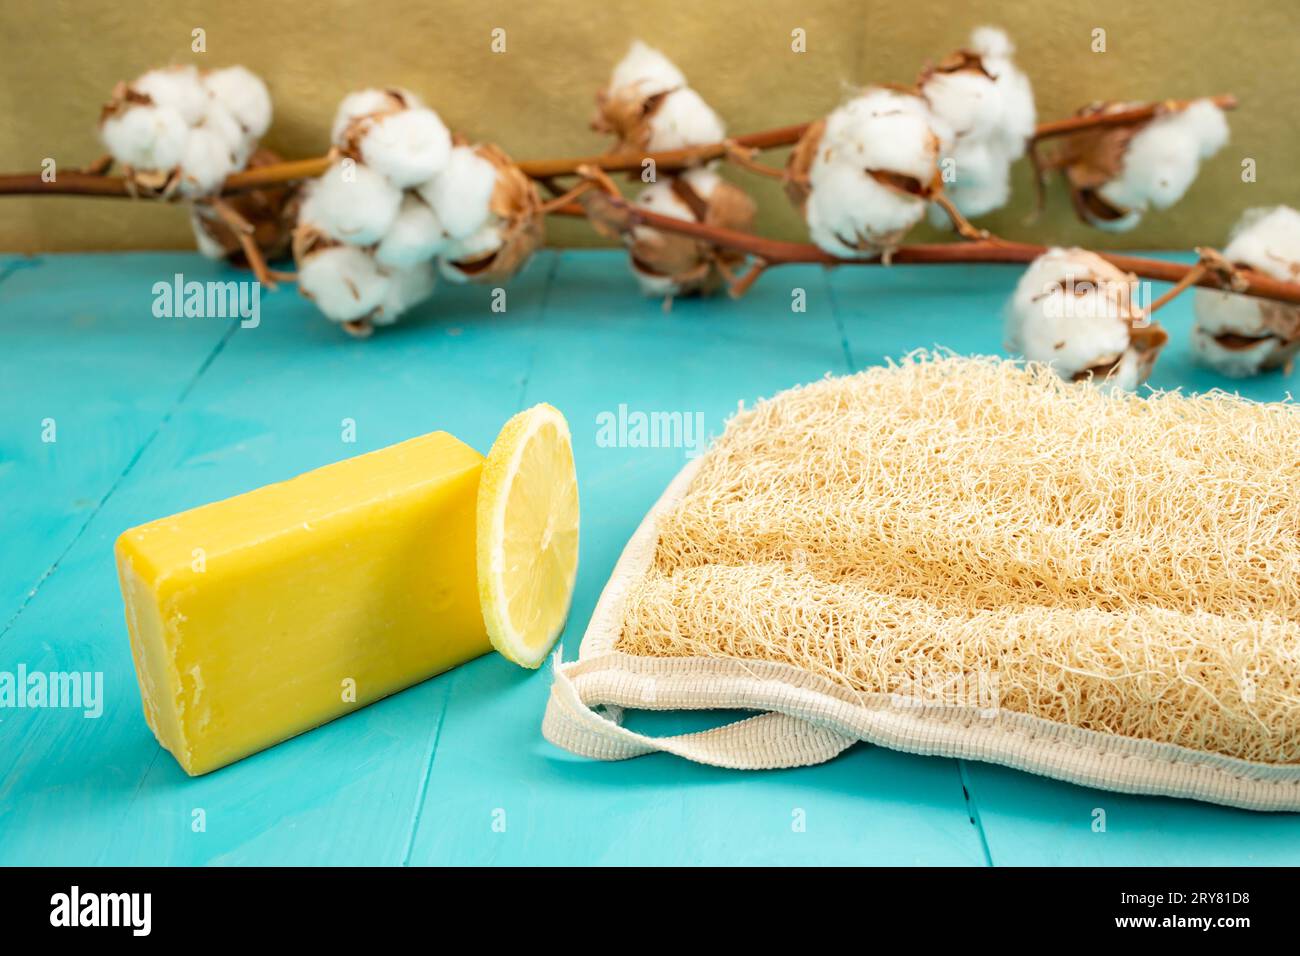 Sapone di limone e fetta di limone accanto a un bagno di loofah con fiori di cotone, foto del prodotto con vista laterale Foto Stock